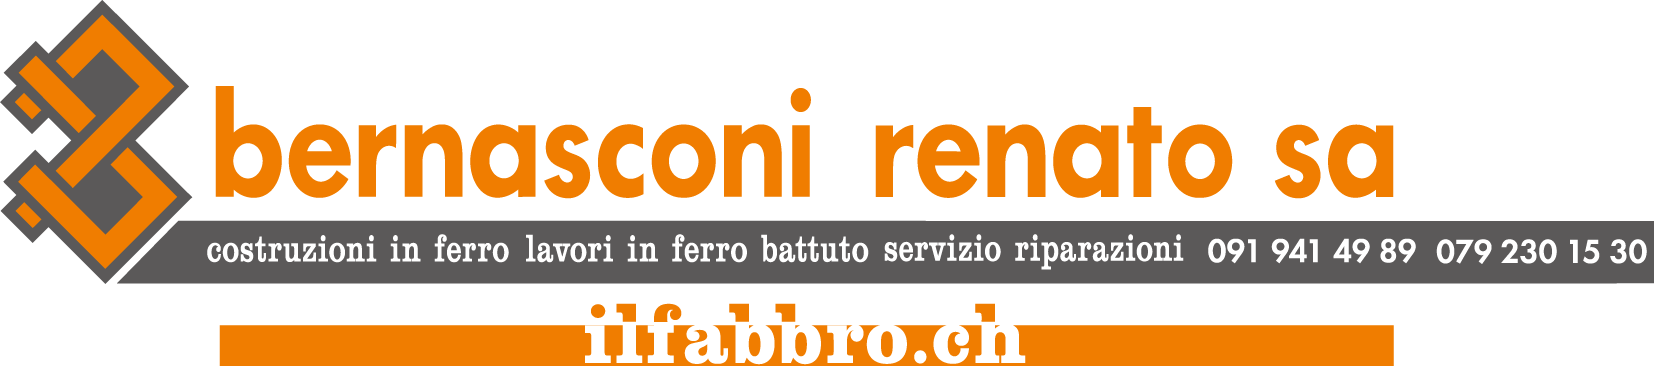 logo_Bernasconi_Renato